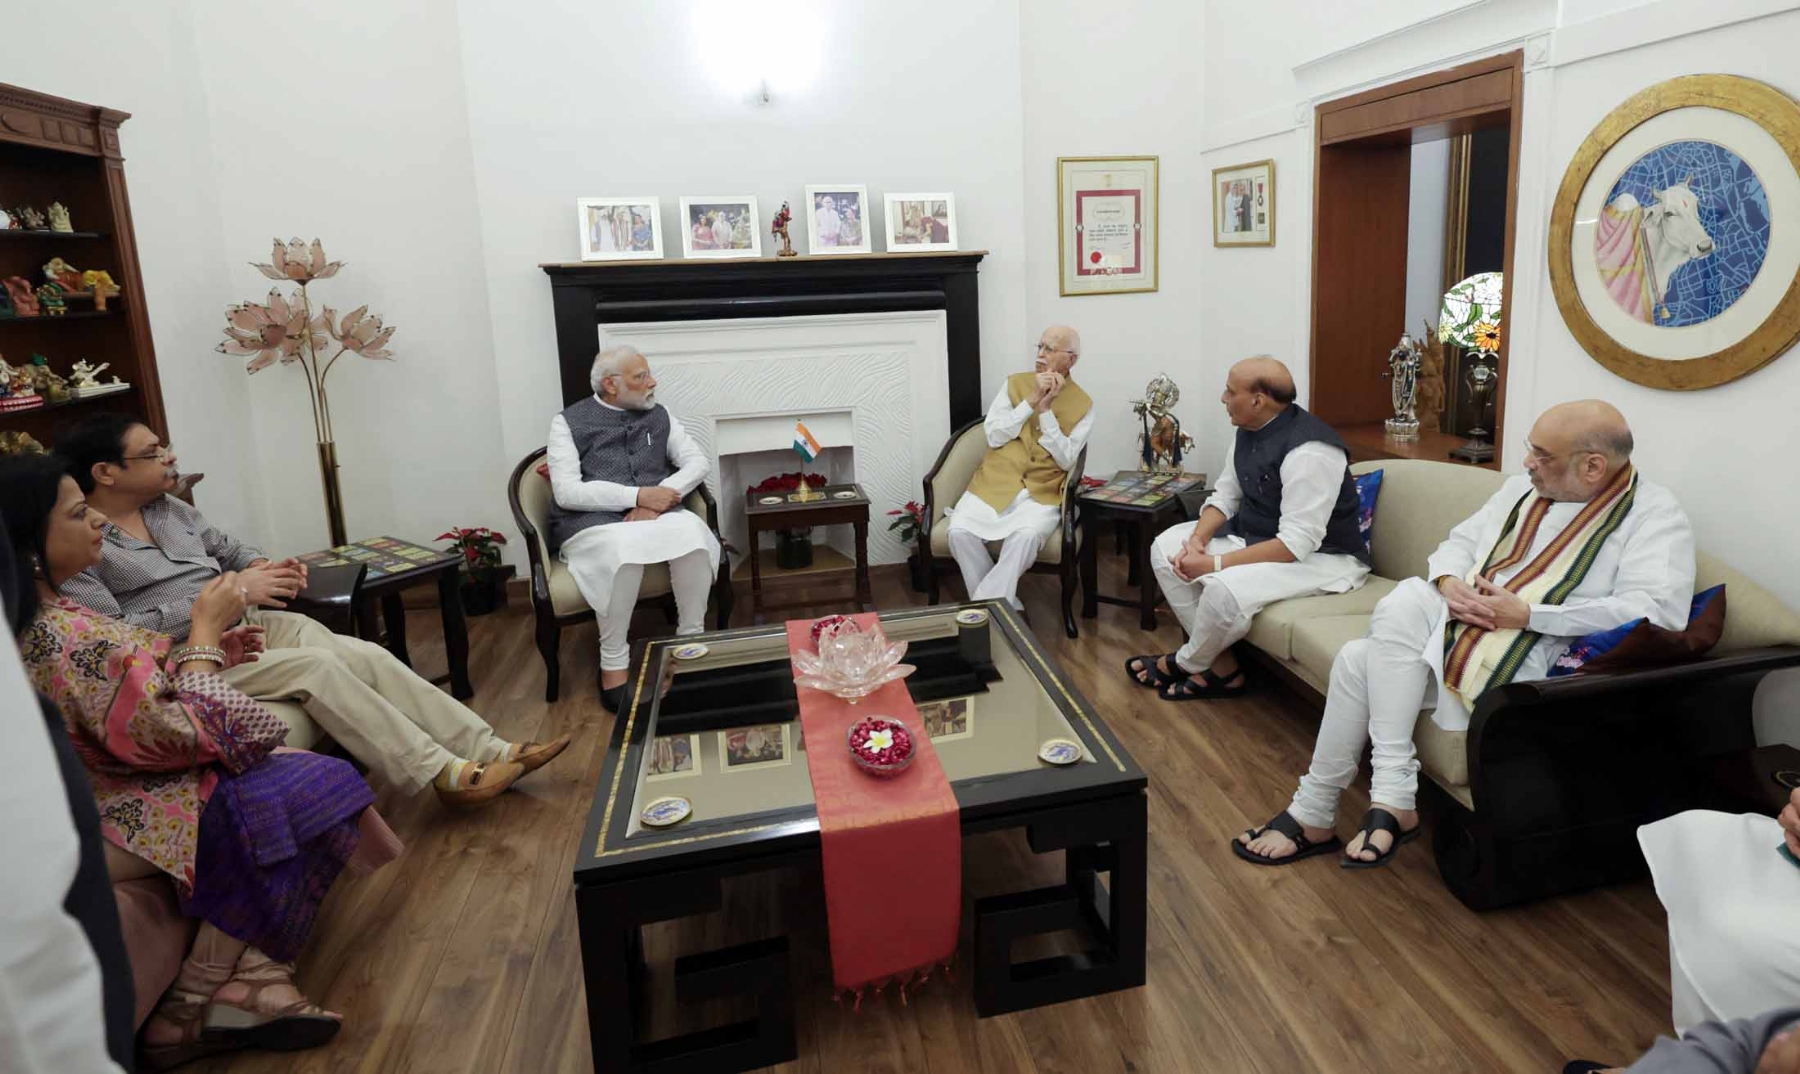  प्रधानमंत्री नरेन्द्र मोदी ने भारतीय जनता पार्टी के वरिष्ठ नेता और पूर्व केंद्रीय गृह मंत्री लाल कृष्ण आडवाणी के जन्मदिन के अवसर पर उनके आवास पर उनसे मुलाकात कर बधाई दी और साथ में रक्षा मंत्री राजनाथ सिंहऔर एचएम अमित शाह। हिन्दुस्थान समाचार/ फोटो